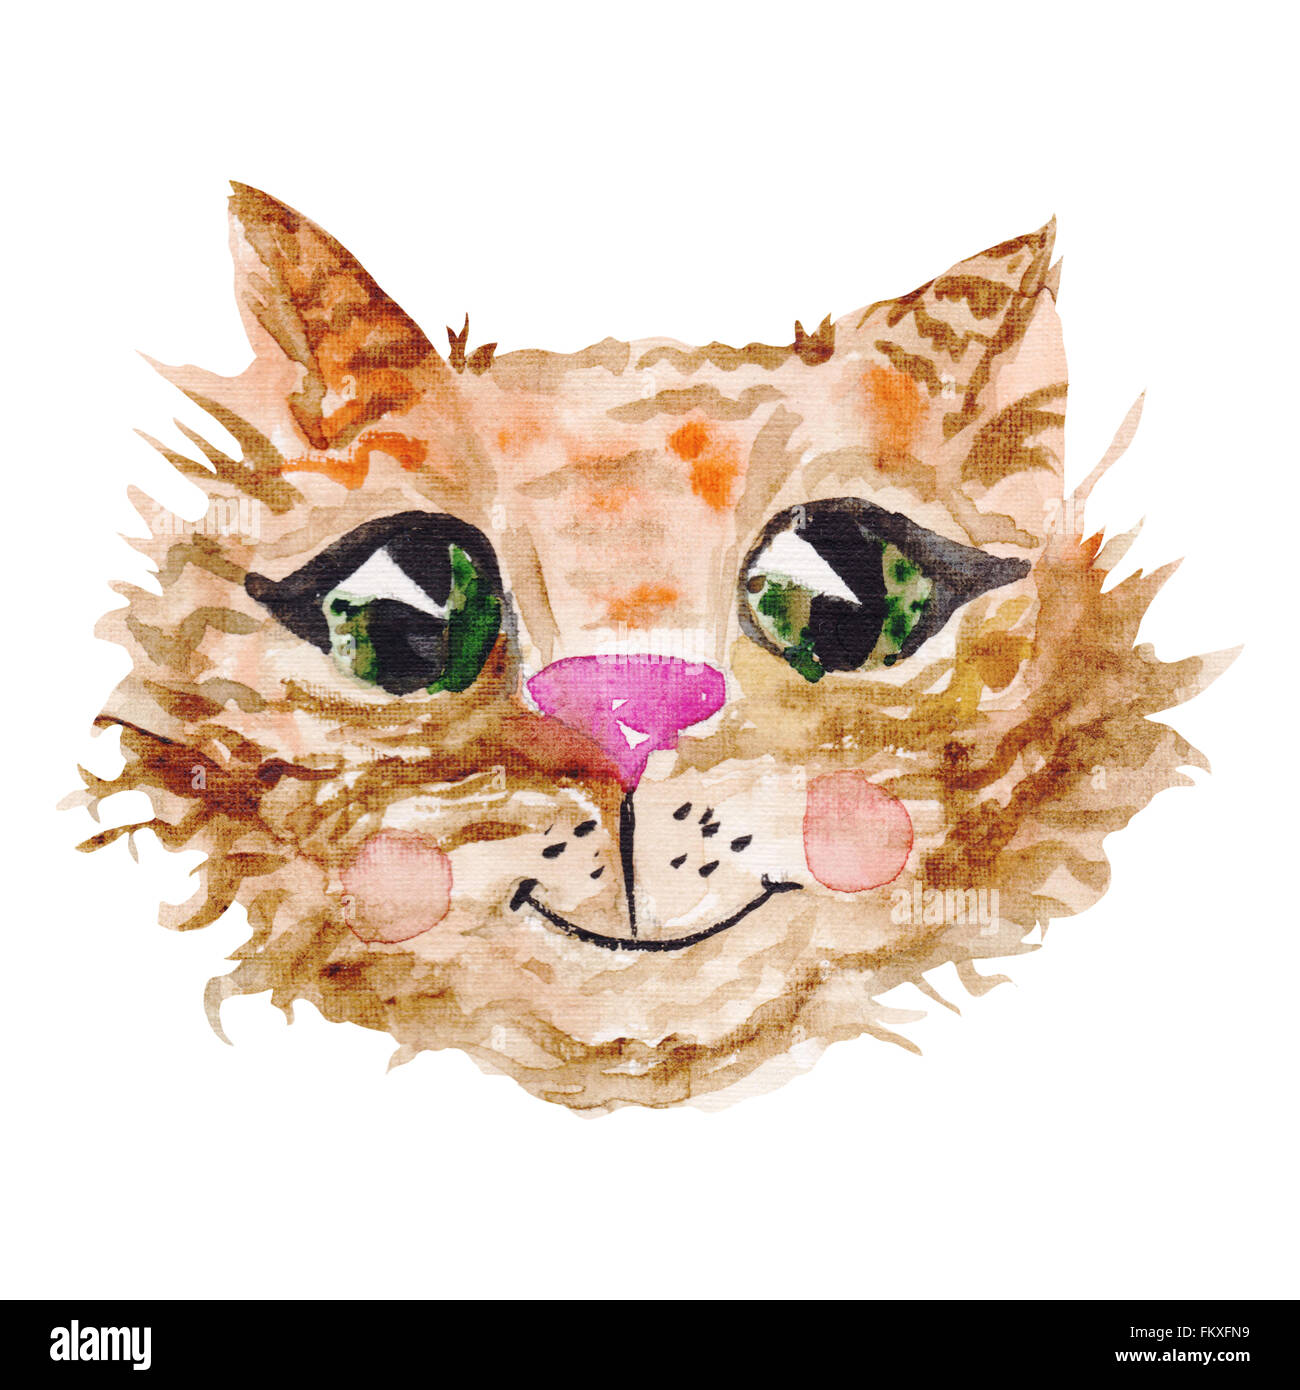 Dipinti a mano Cartoon carino gattino con grandi occhi isolati su sfondo bianco Foto Stock